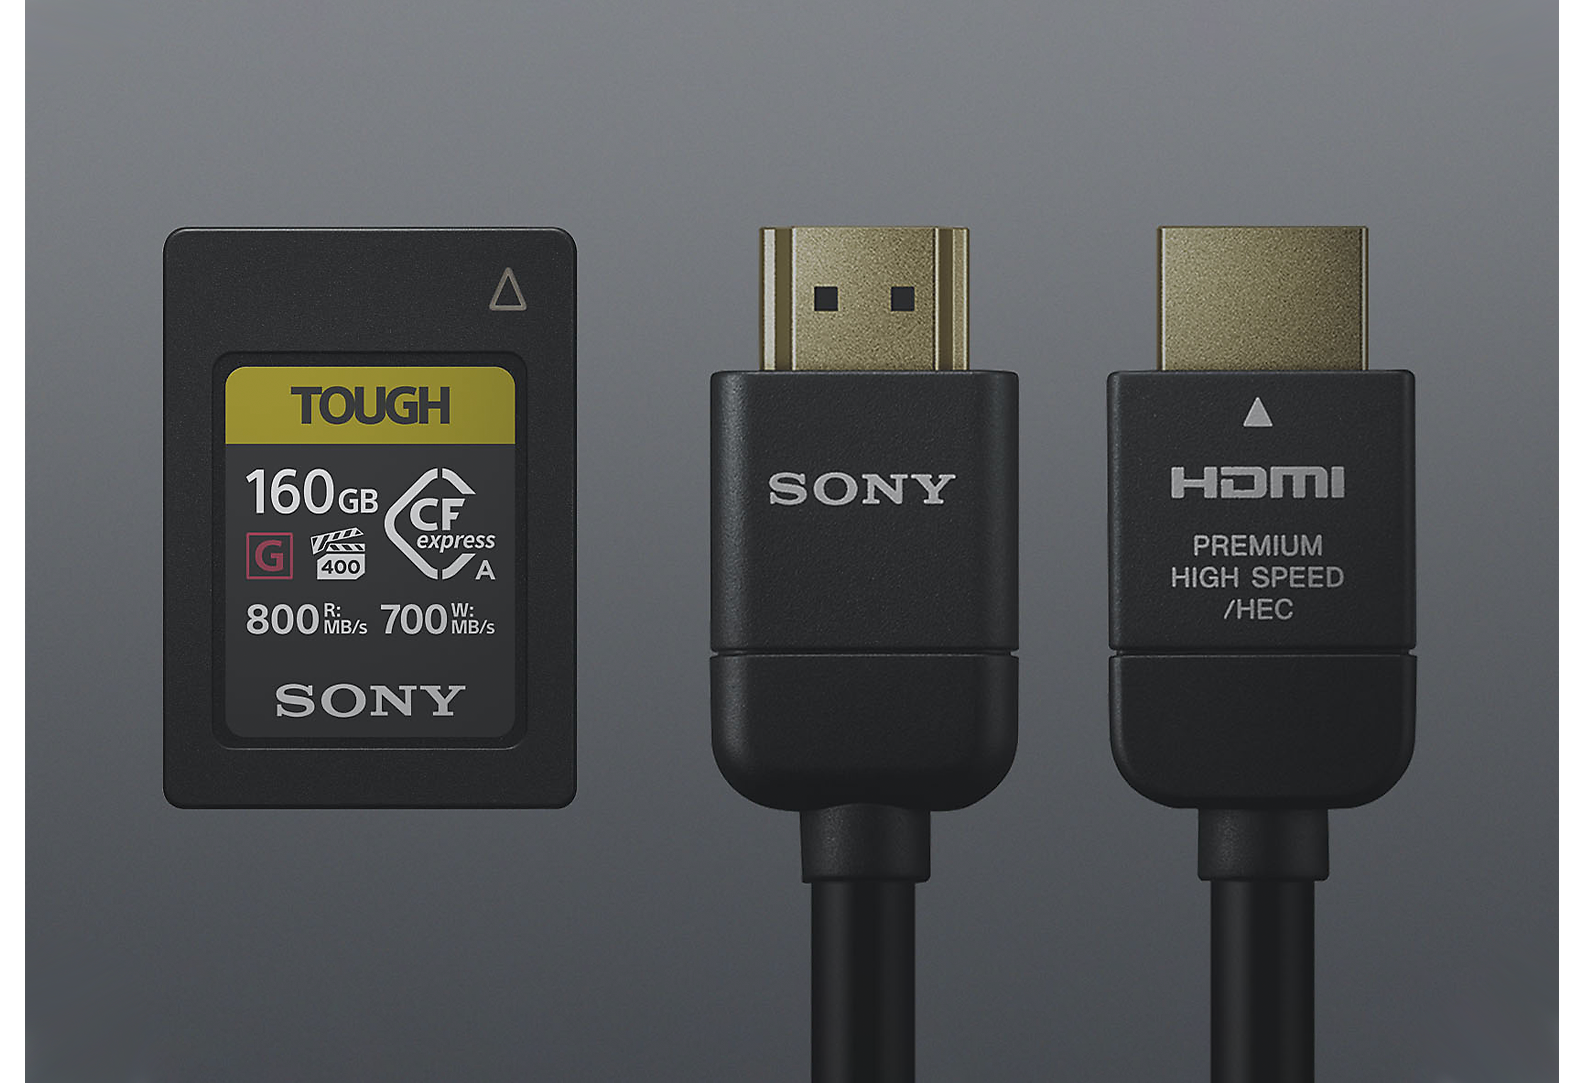 Karta SD Tough Sony i dwa czarne przewody Sony na szarym tle